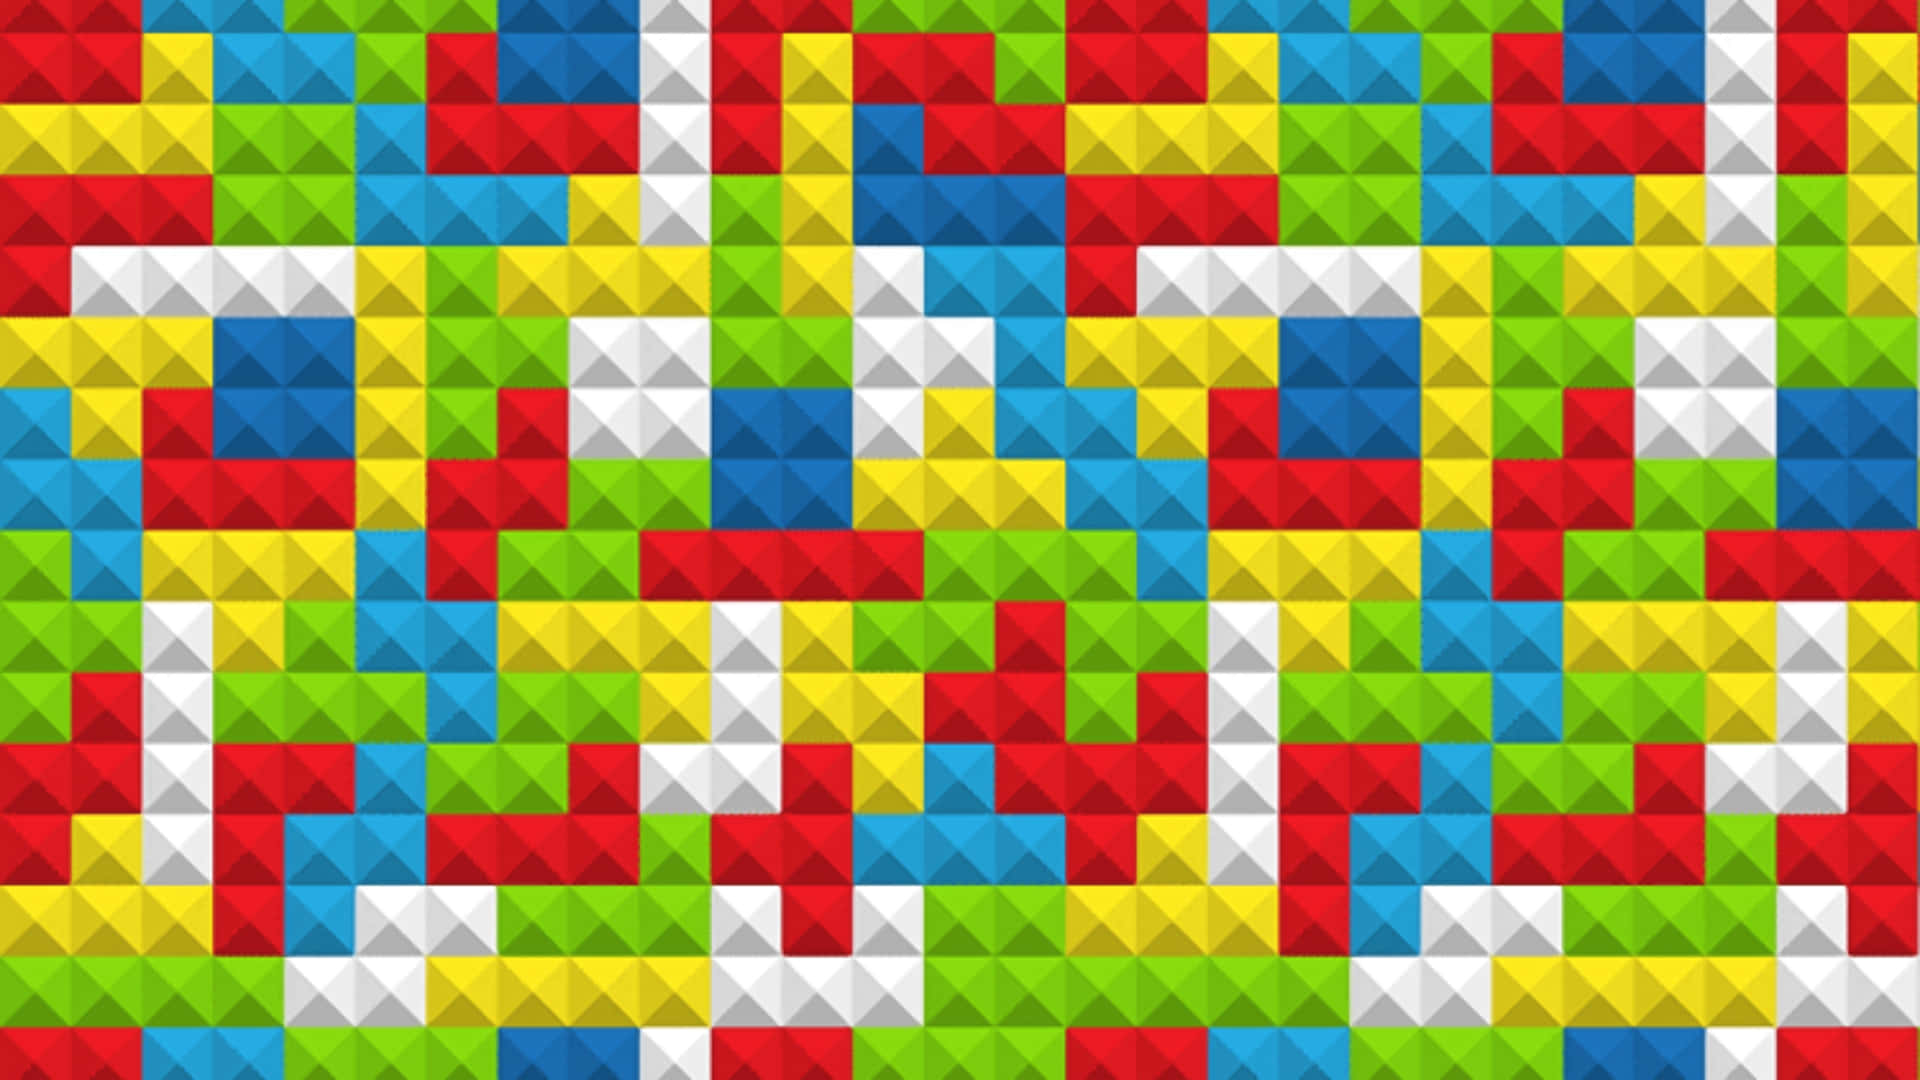 Juegoclásico De Tetris En Colores Vibrantes.